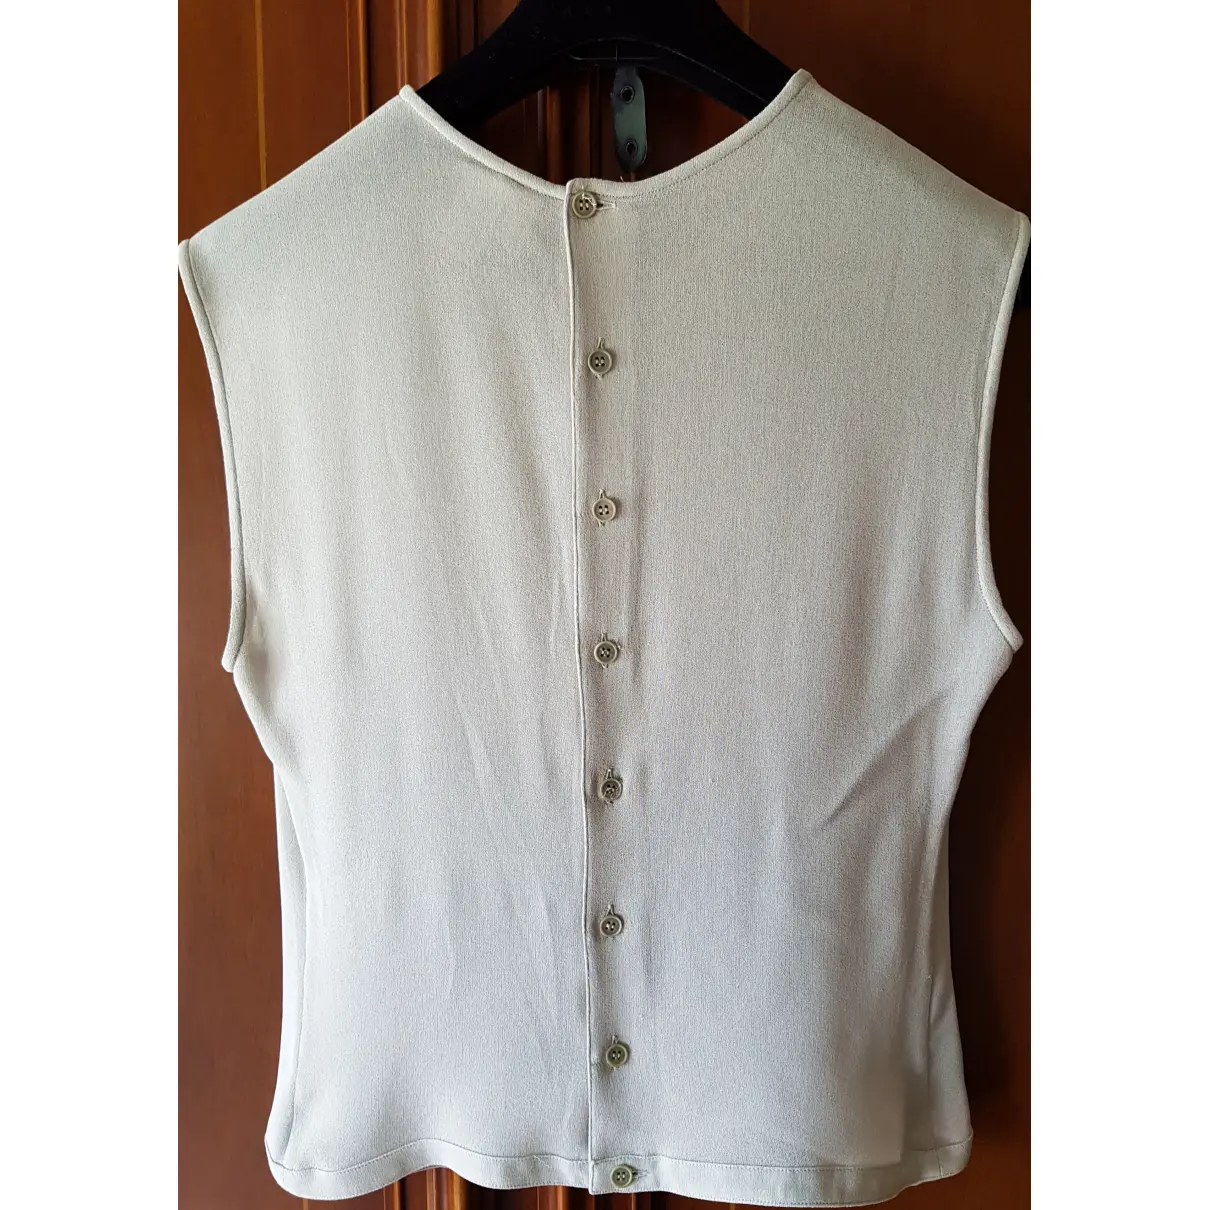 Buy Giorgio Armani Silk camisole online - Vintage